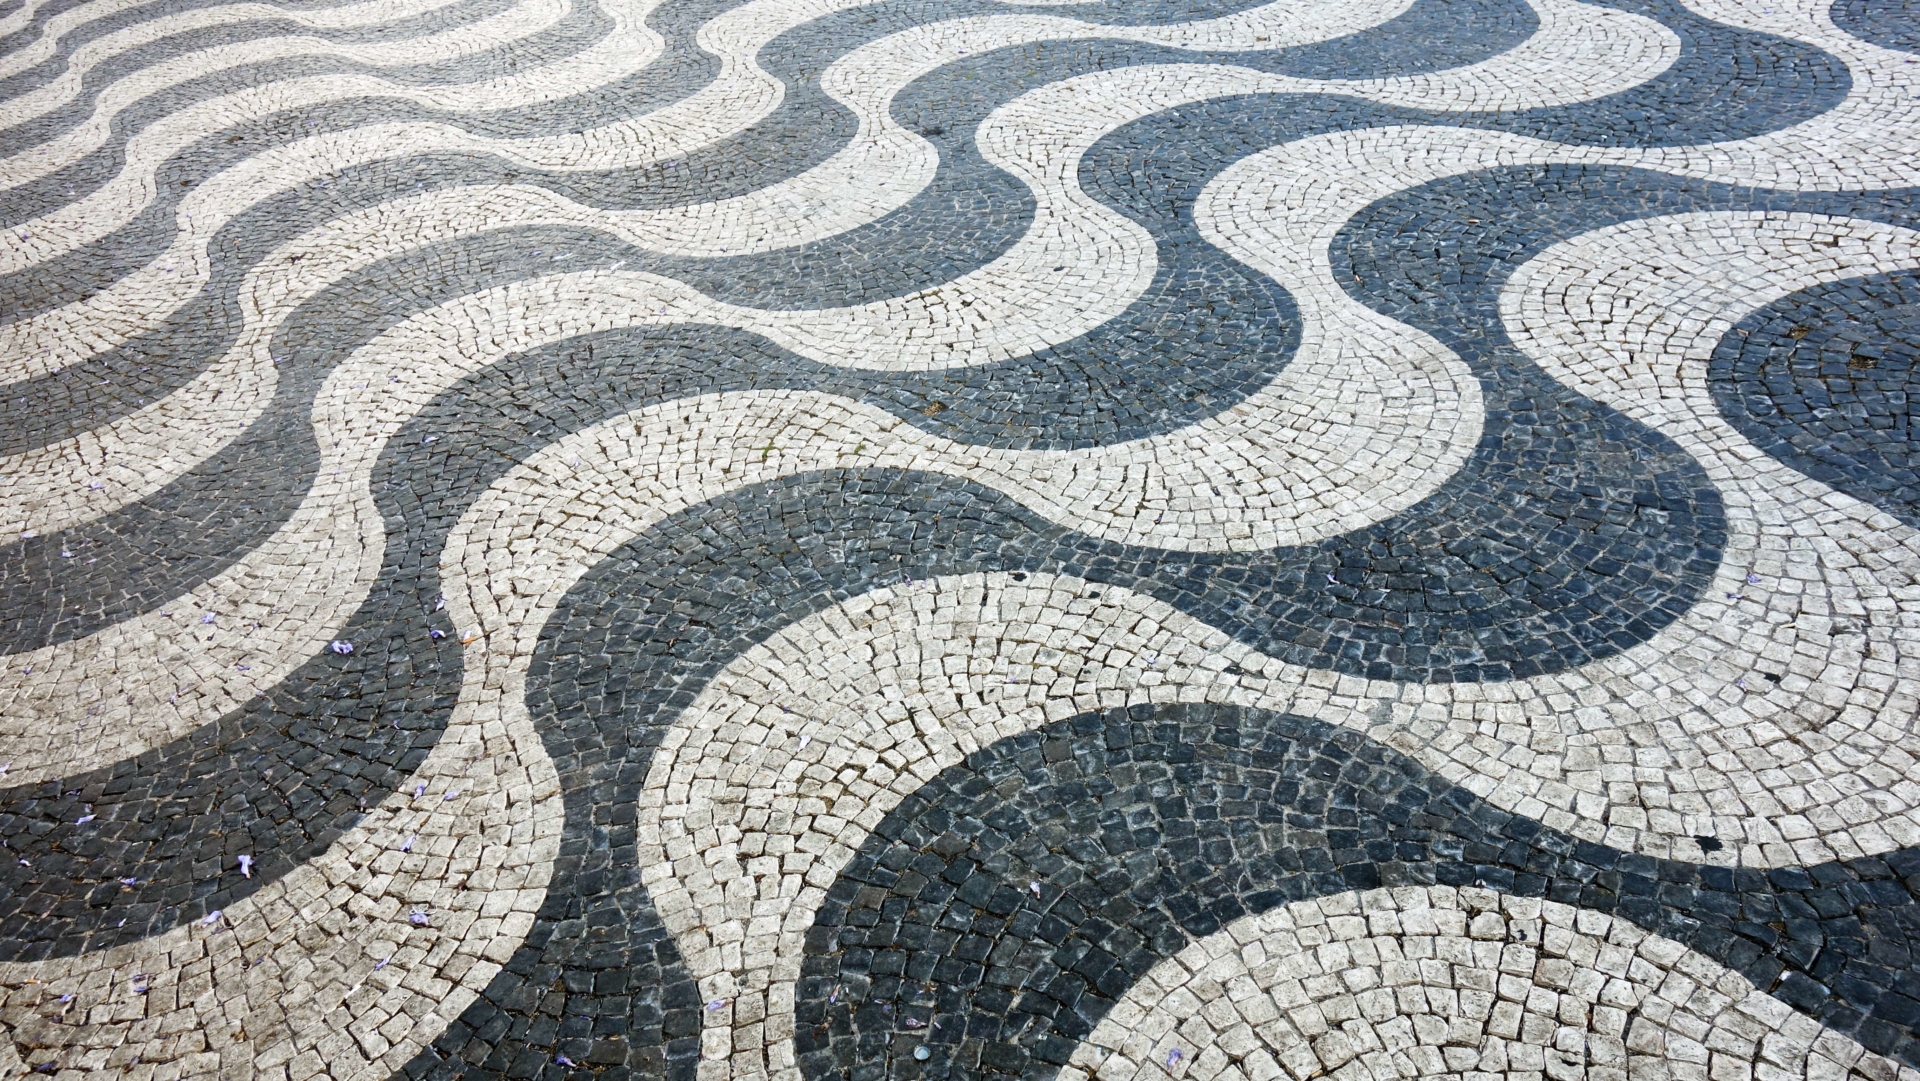 Calçada du Portugal